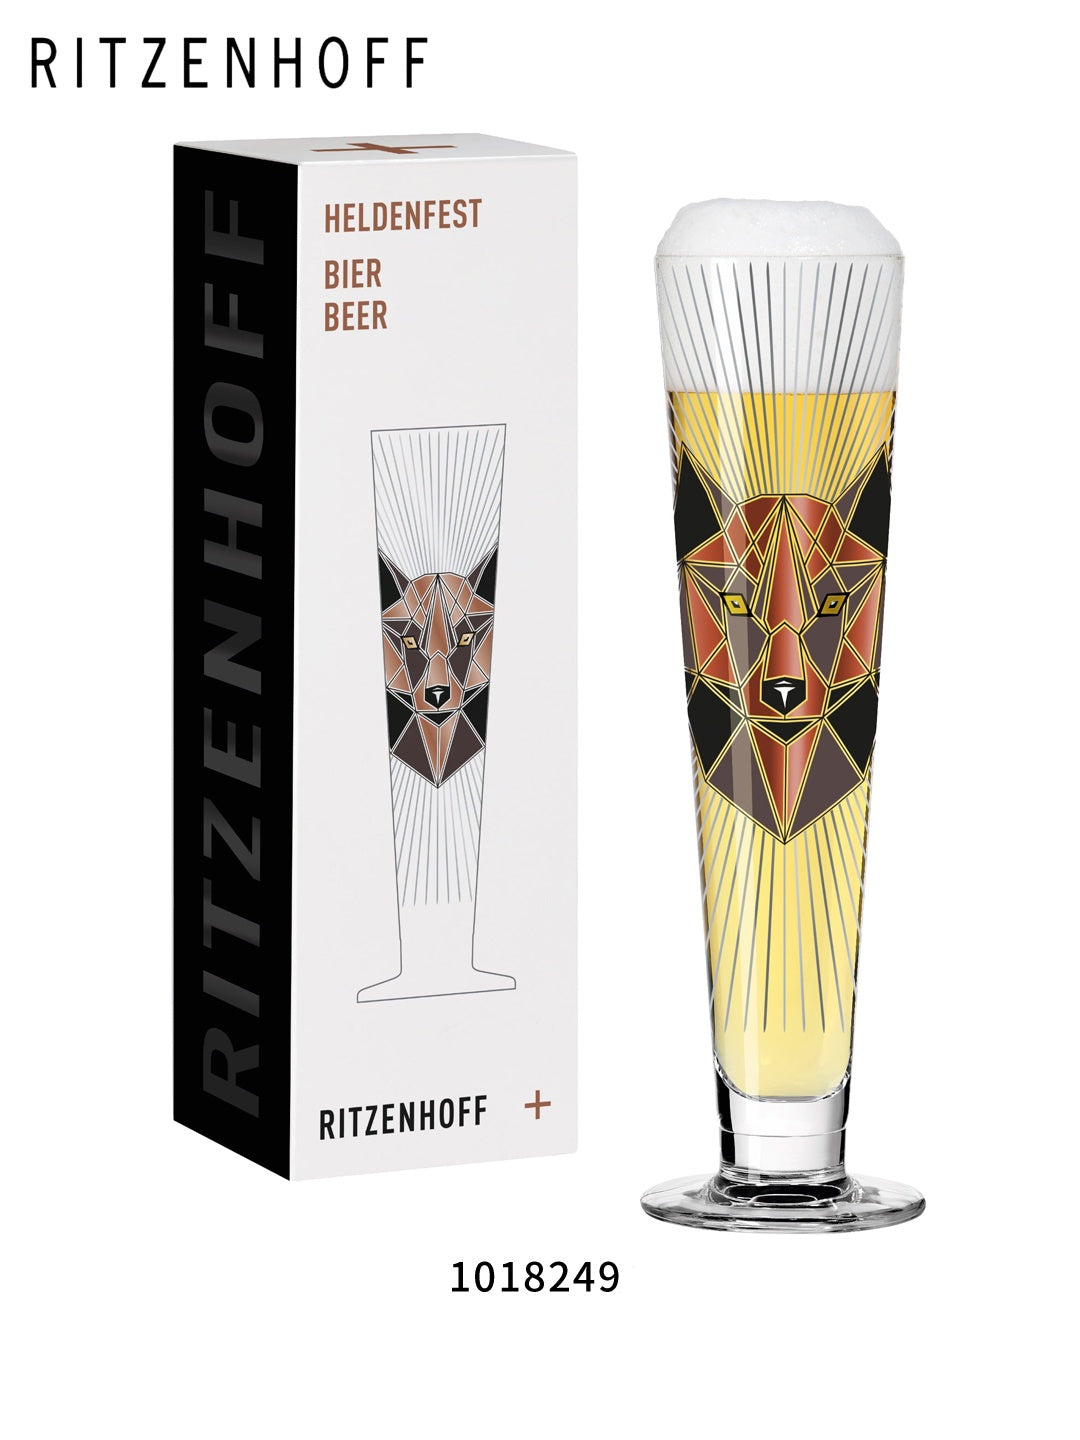 RITZENHOFF Black Label Pilsner Crystal Beer Mug